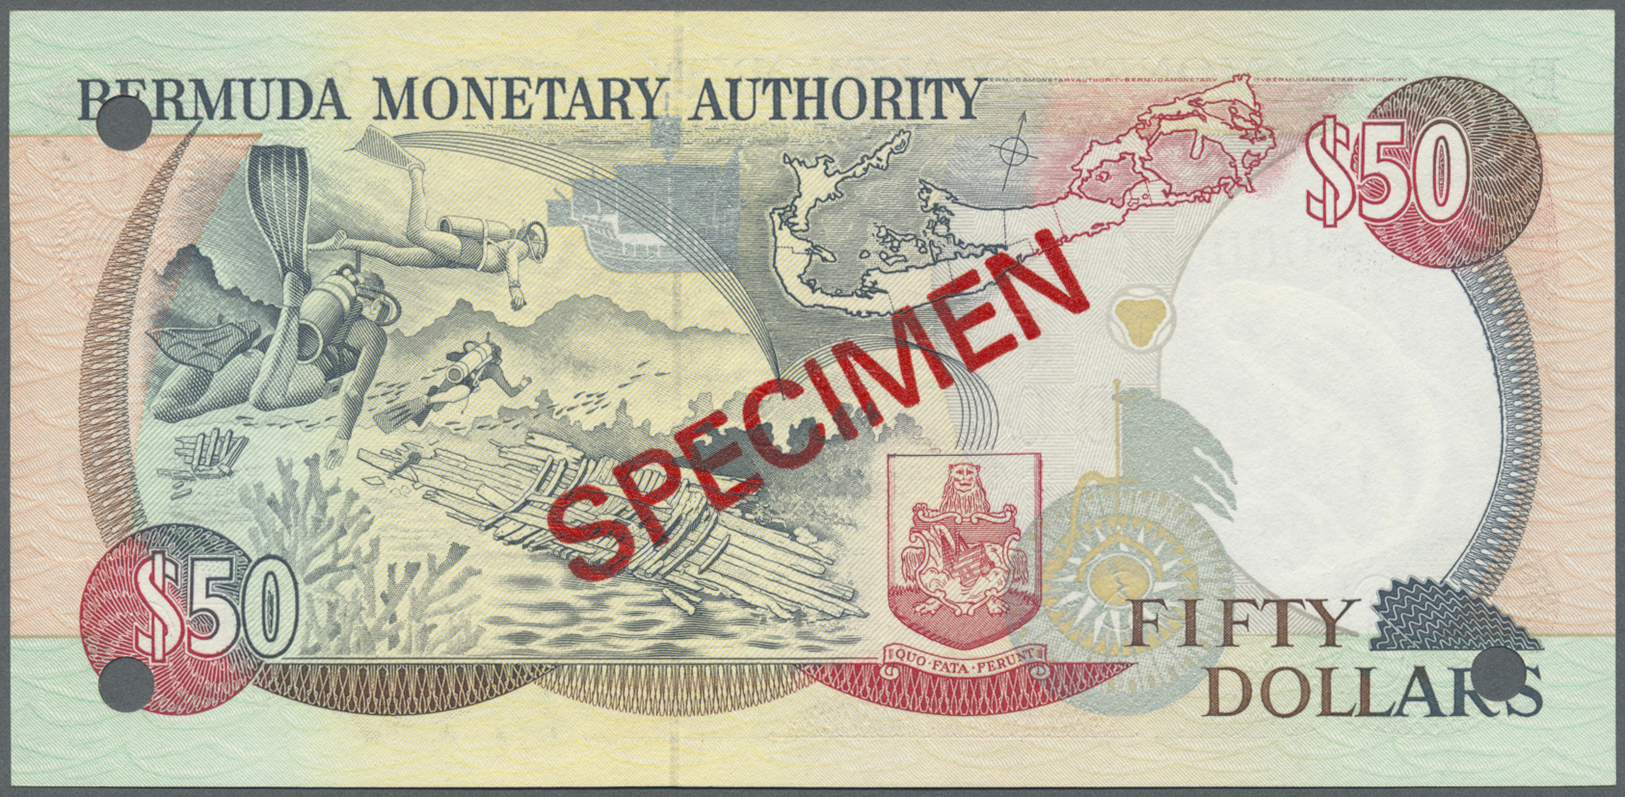 00307 Bermuda: 50 Dollars 1992 Specimen P. 44s In Condition: UNC. - Bermudas